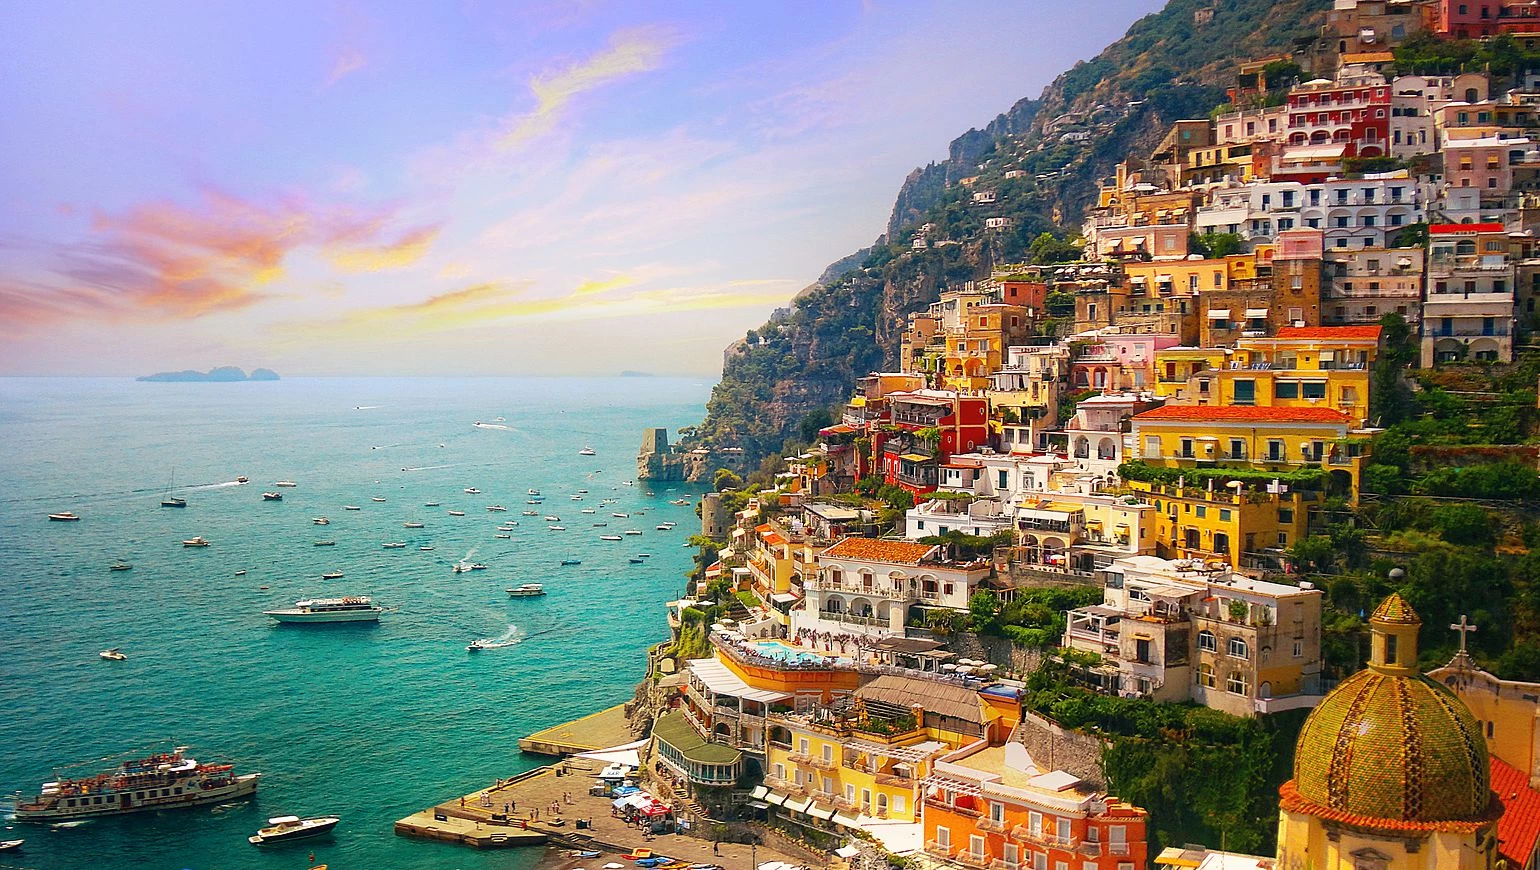 Descubriendo la belleza de la Costa Amalfitana en Italia